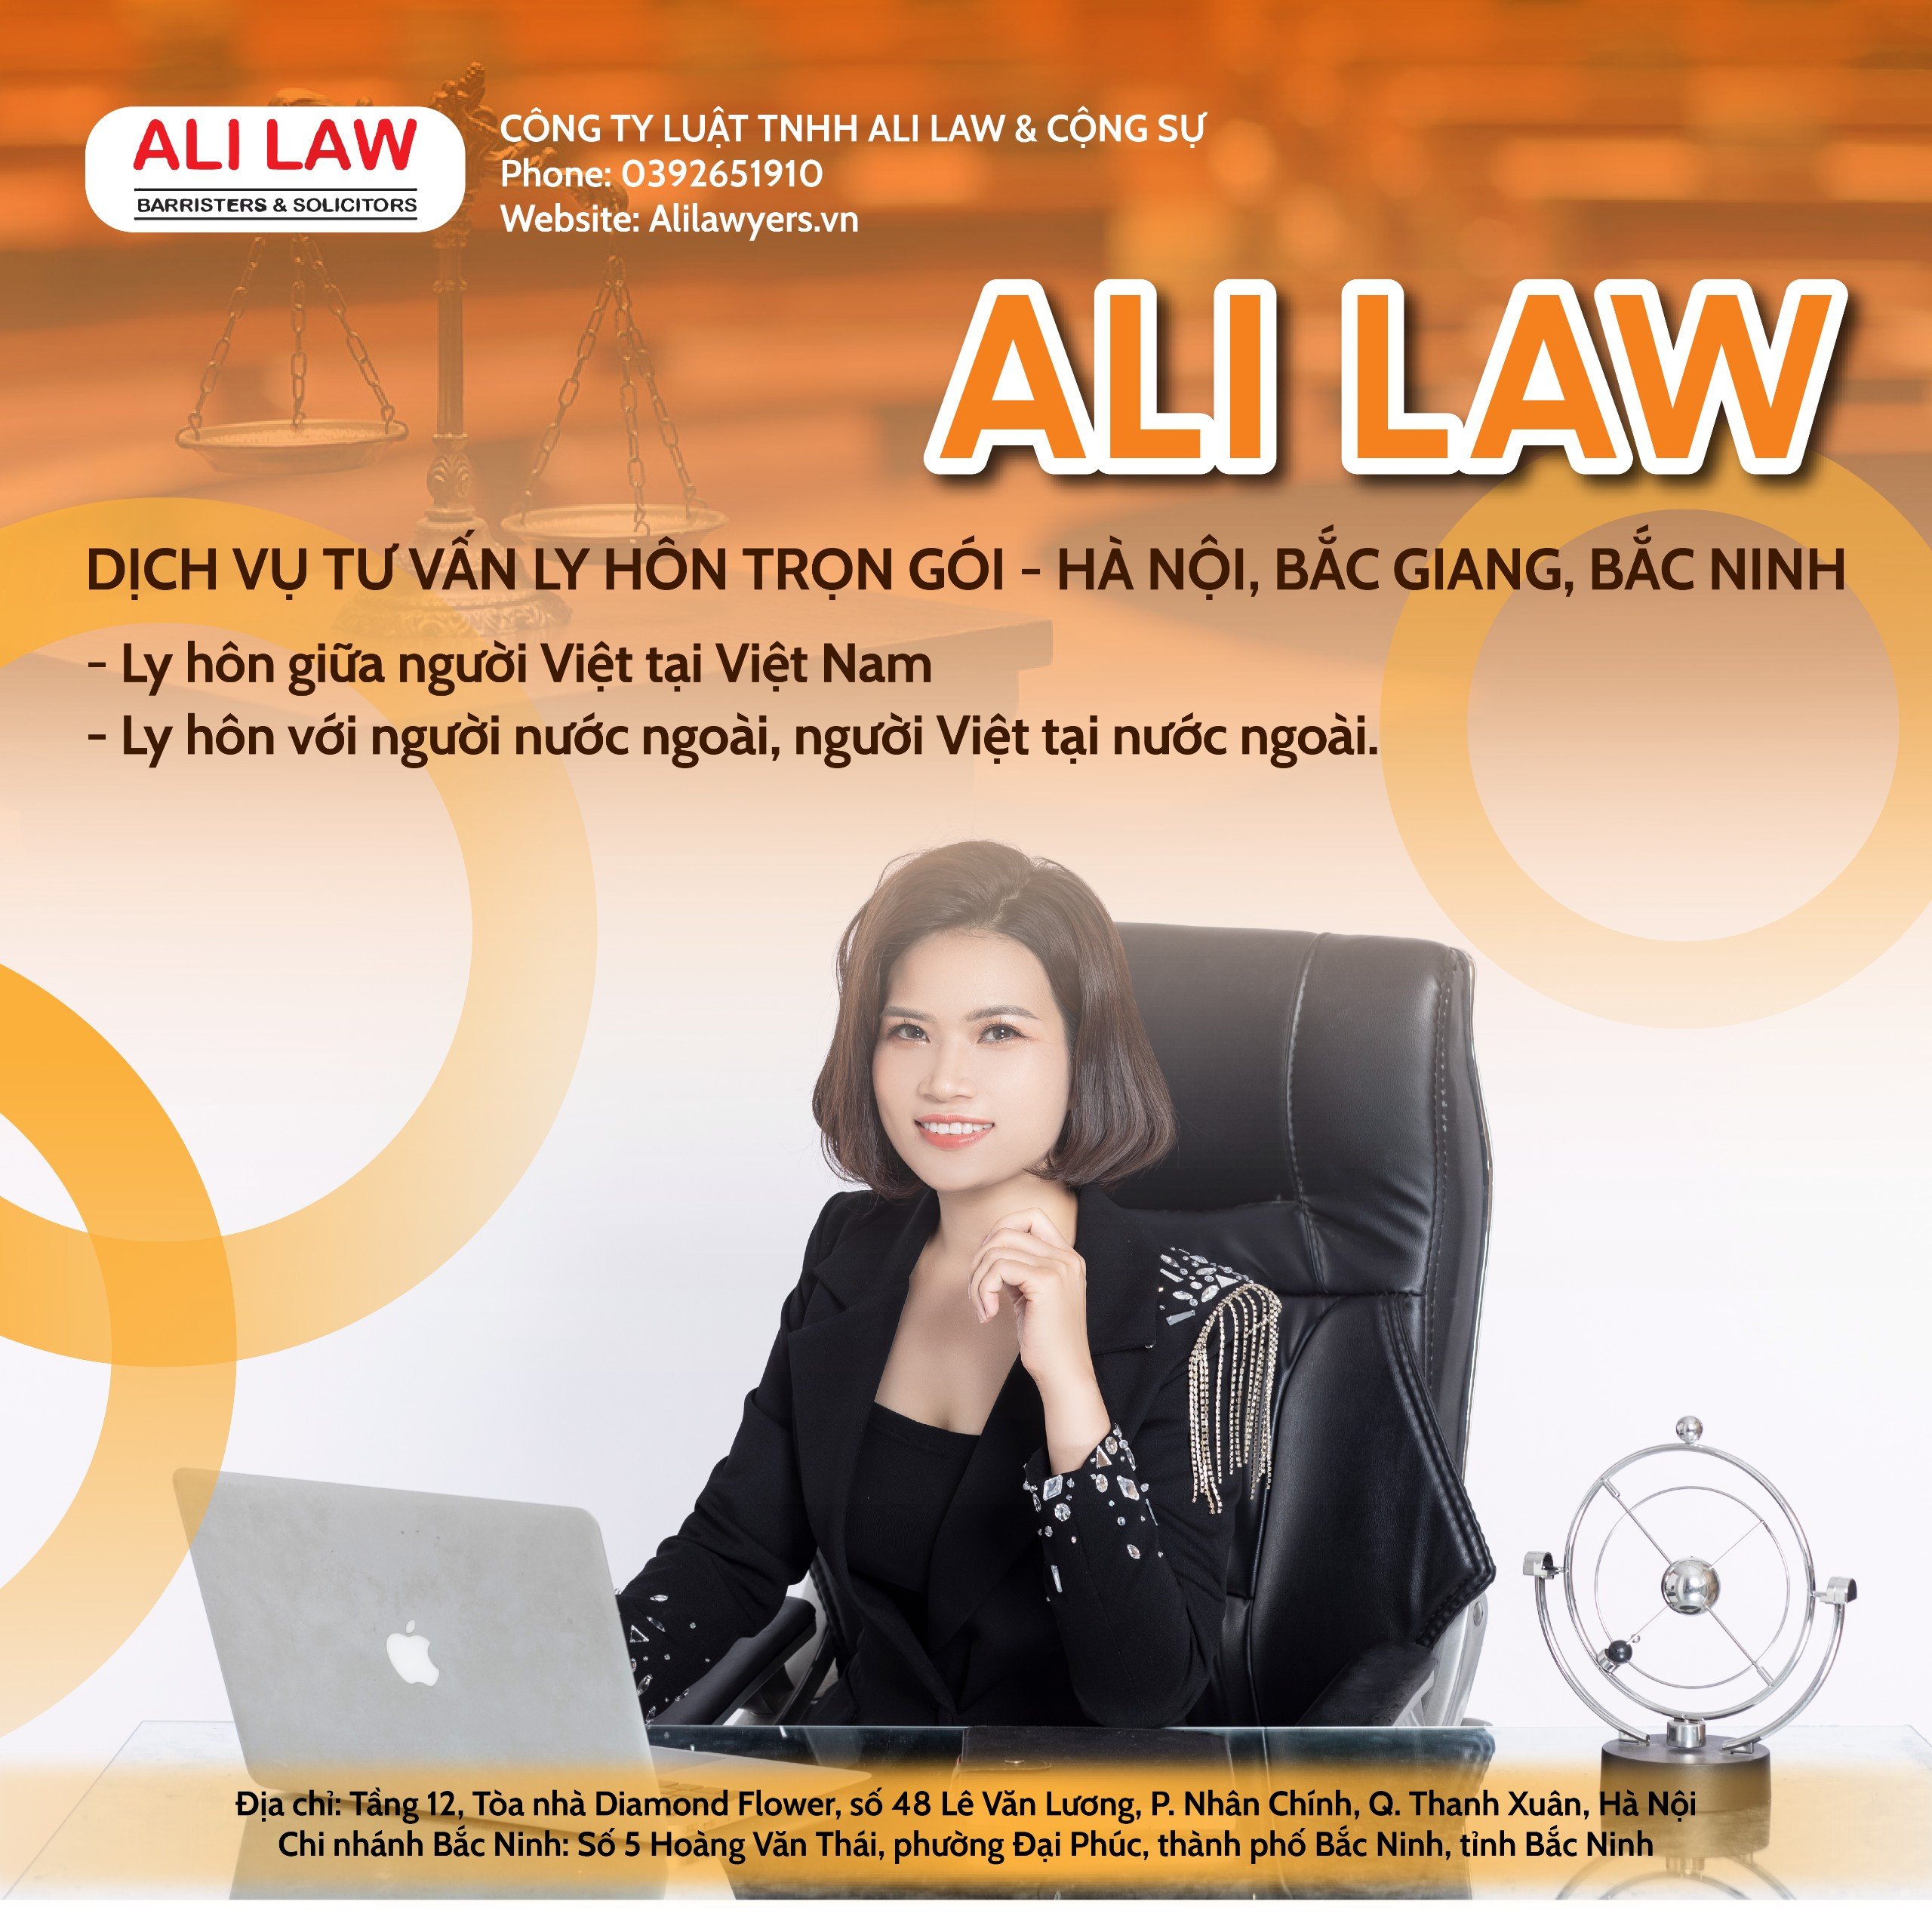 Ali Law – Tư Vấn Ly Hôn: Quy Trình, Thủ Tục và Những Điều Cần Biết